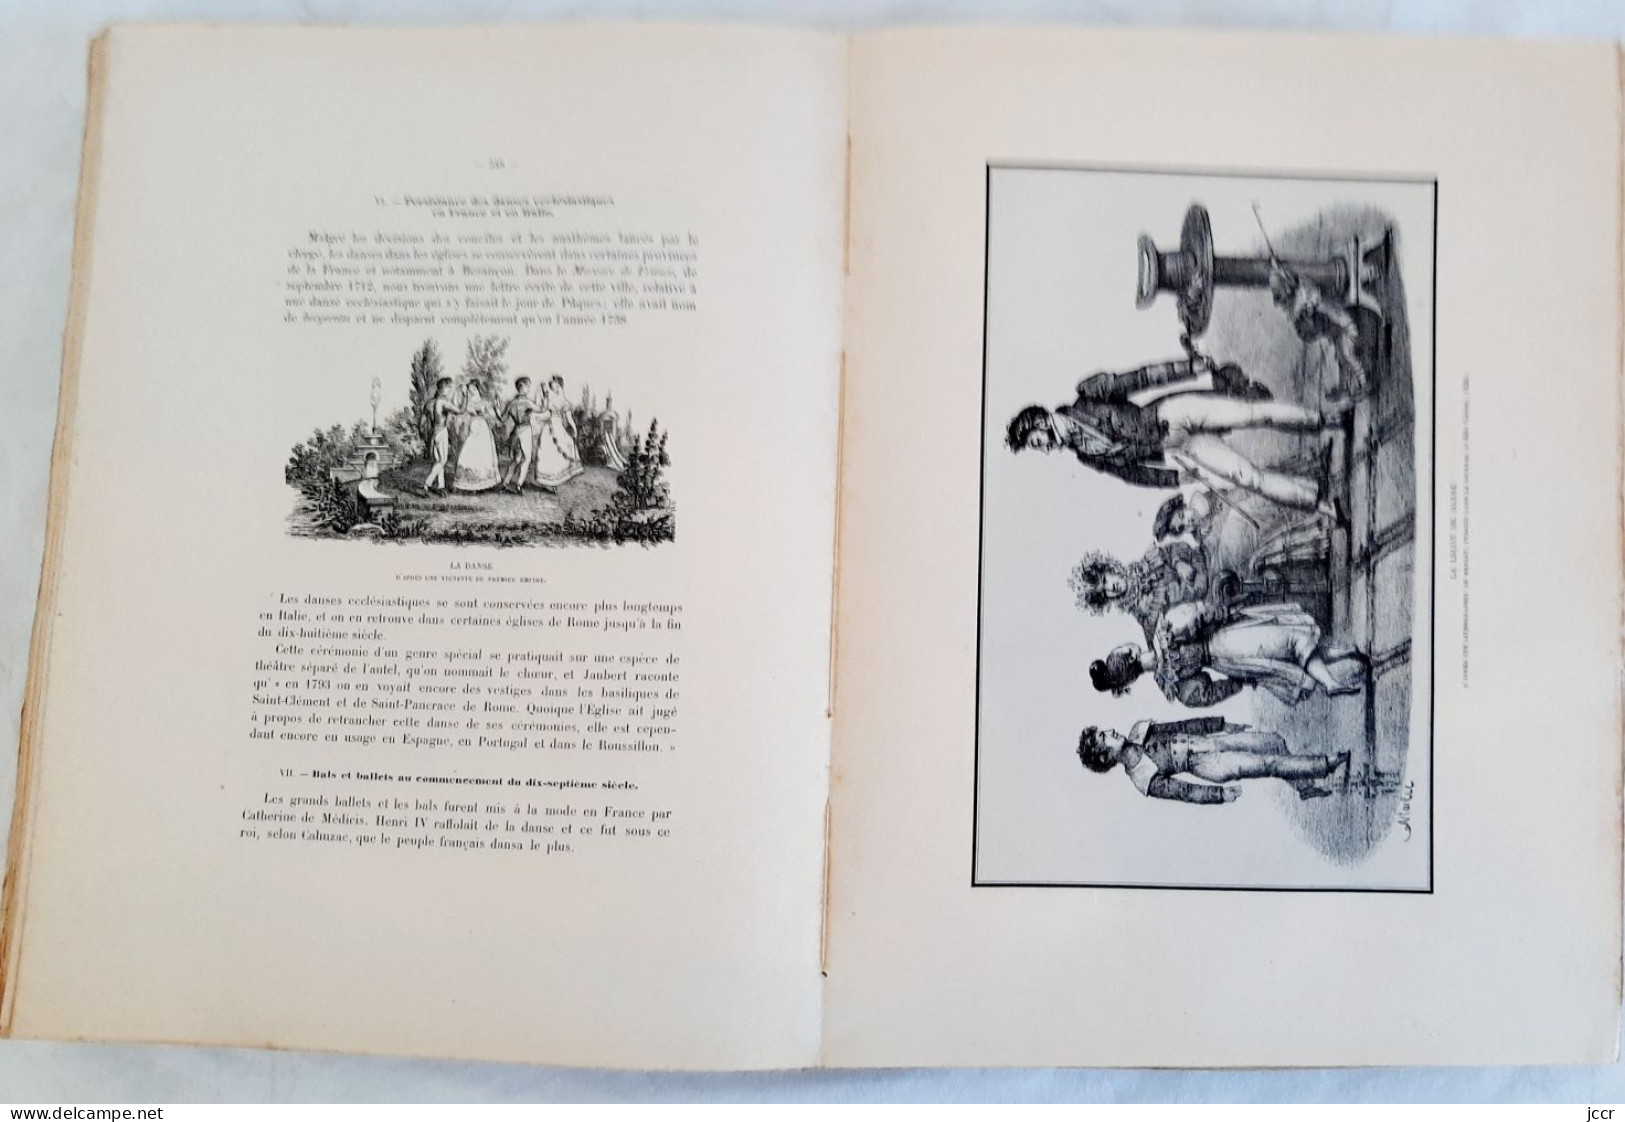 Histoire des Jeux - Henry René d'Allemagne - 2 volumes - 1927 - Envoi signé Edouard Herriot